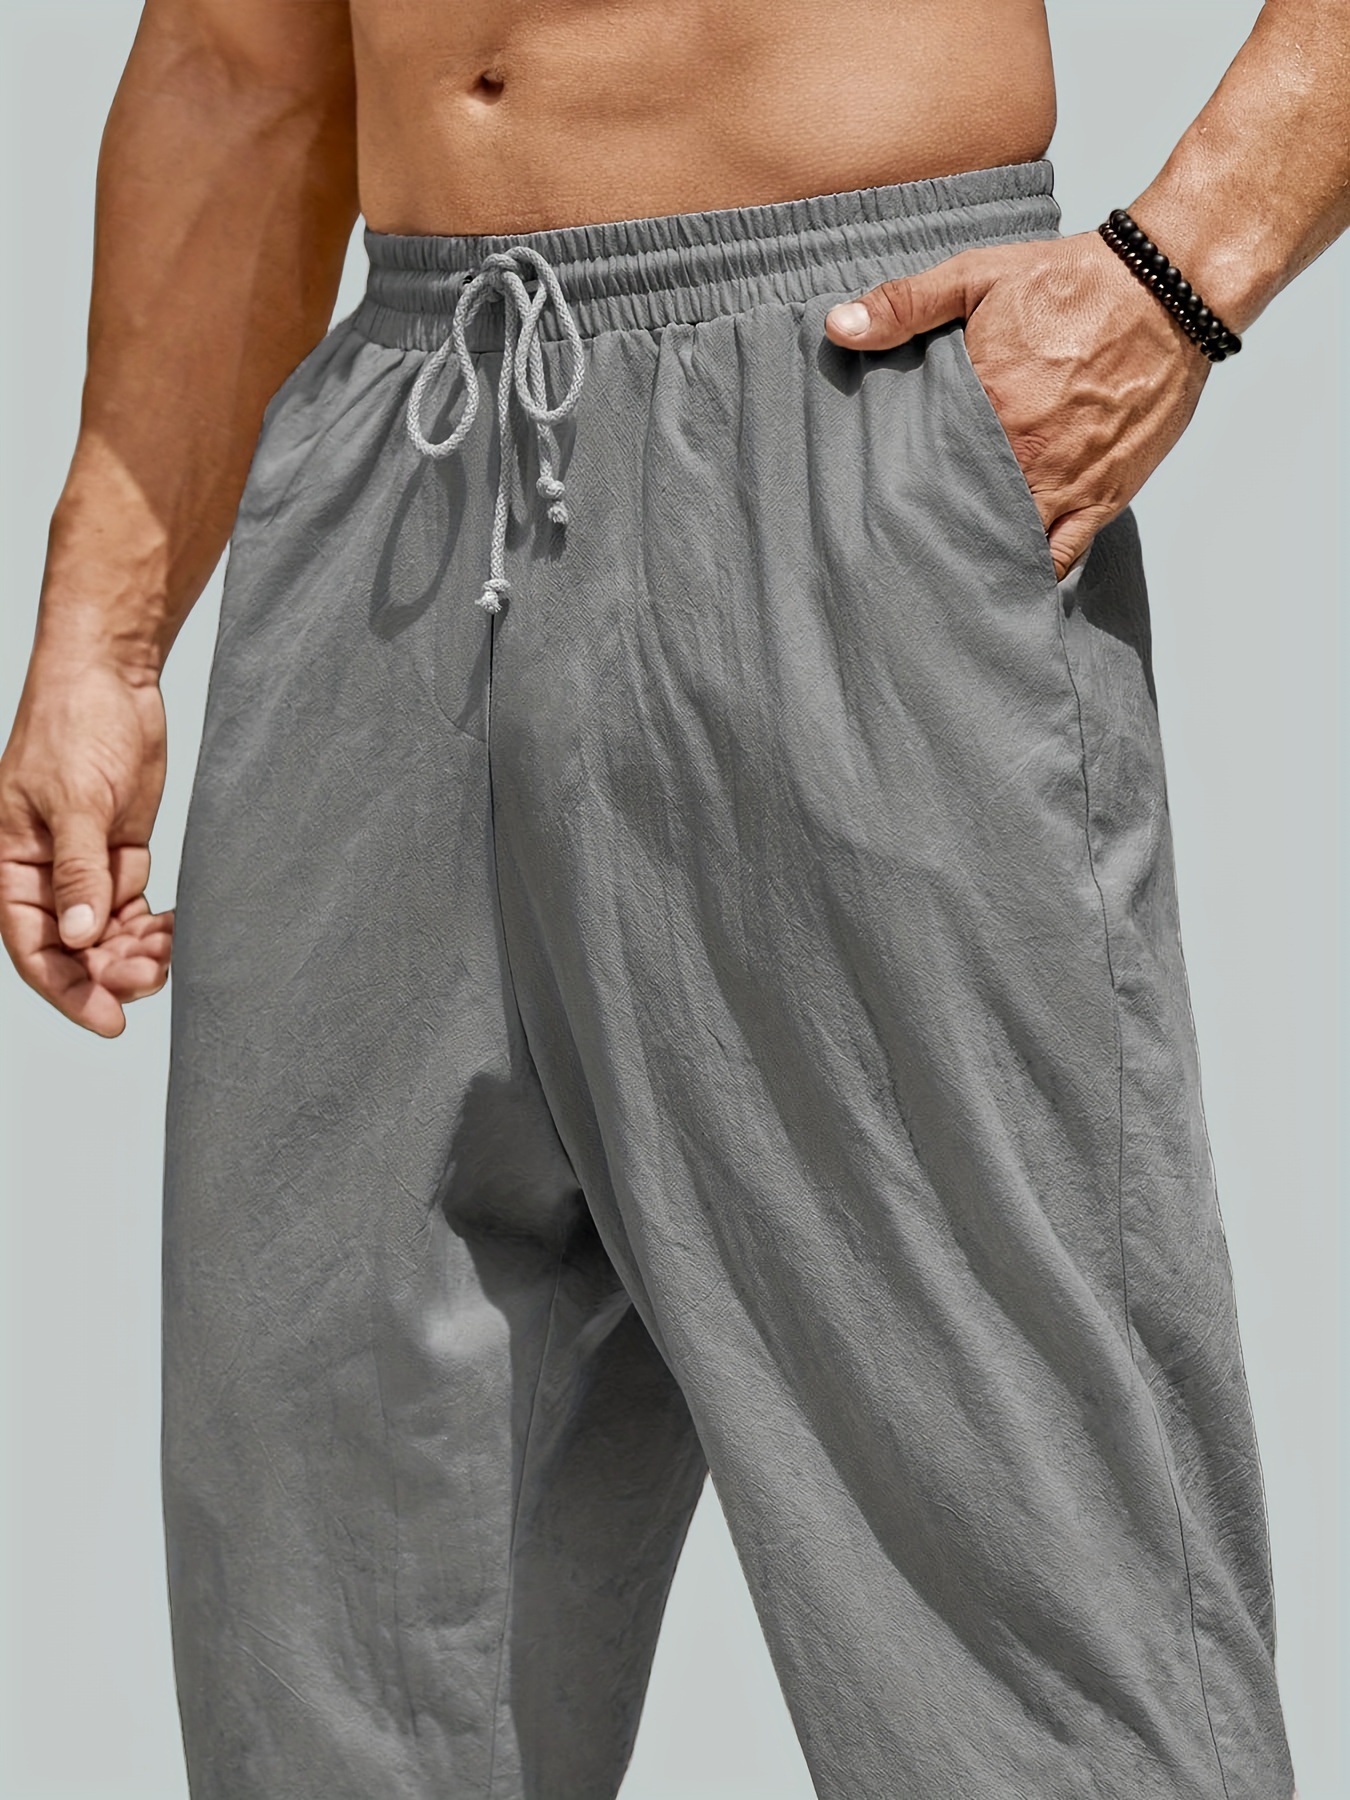 Pantalones bombachos de Yoga para hombre, pantalón holgado de algodón,  estilo Hippie, informal, color verde militar